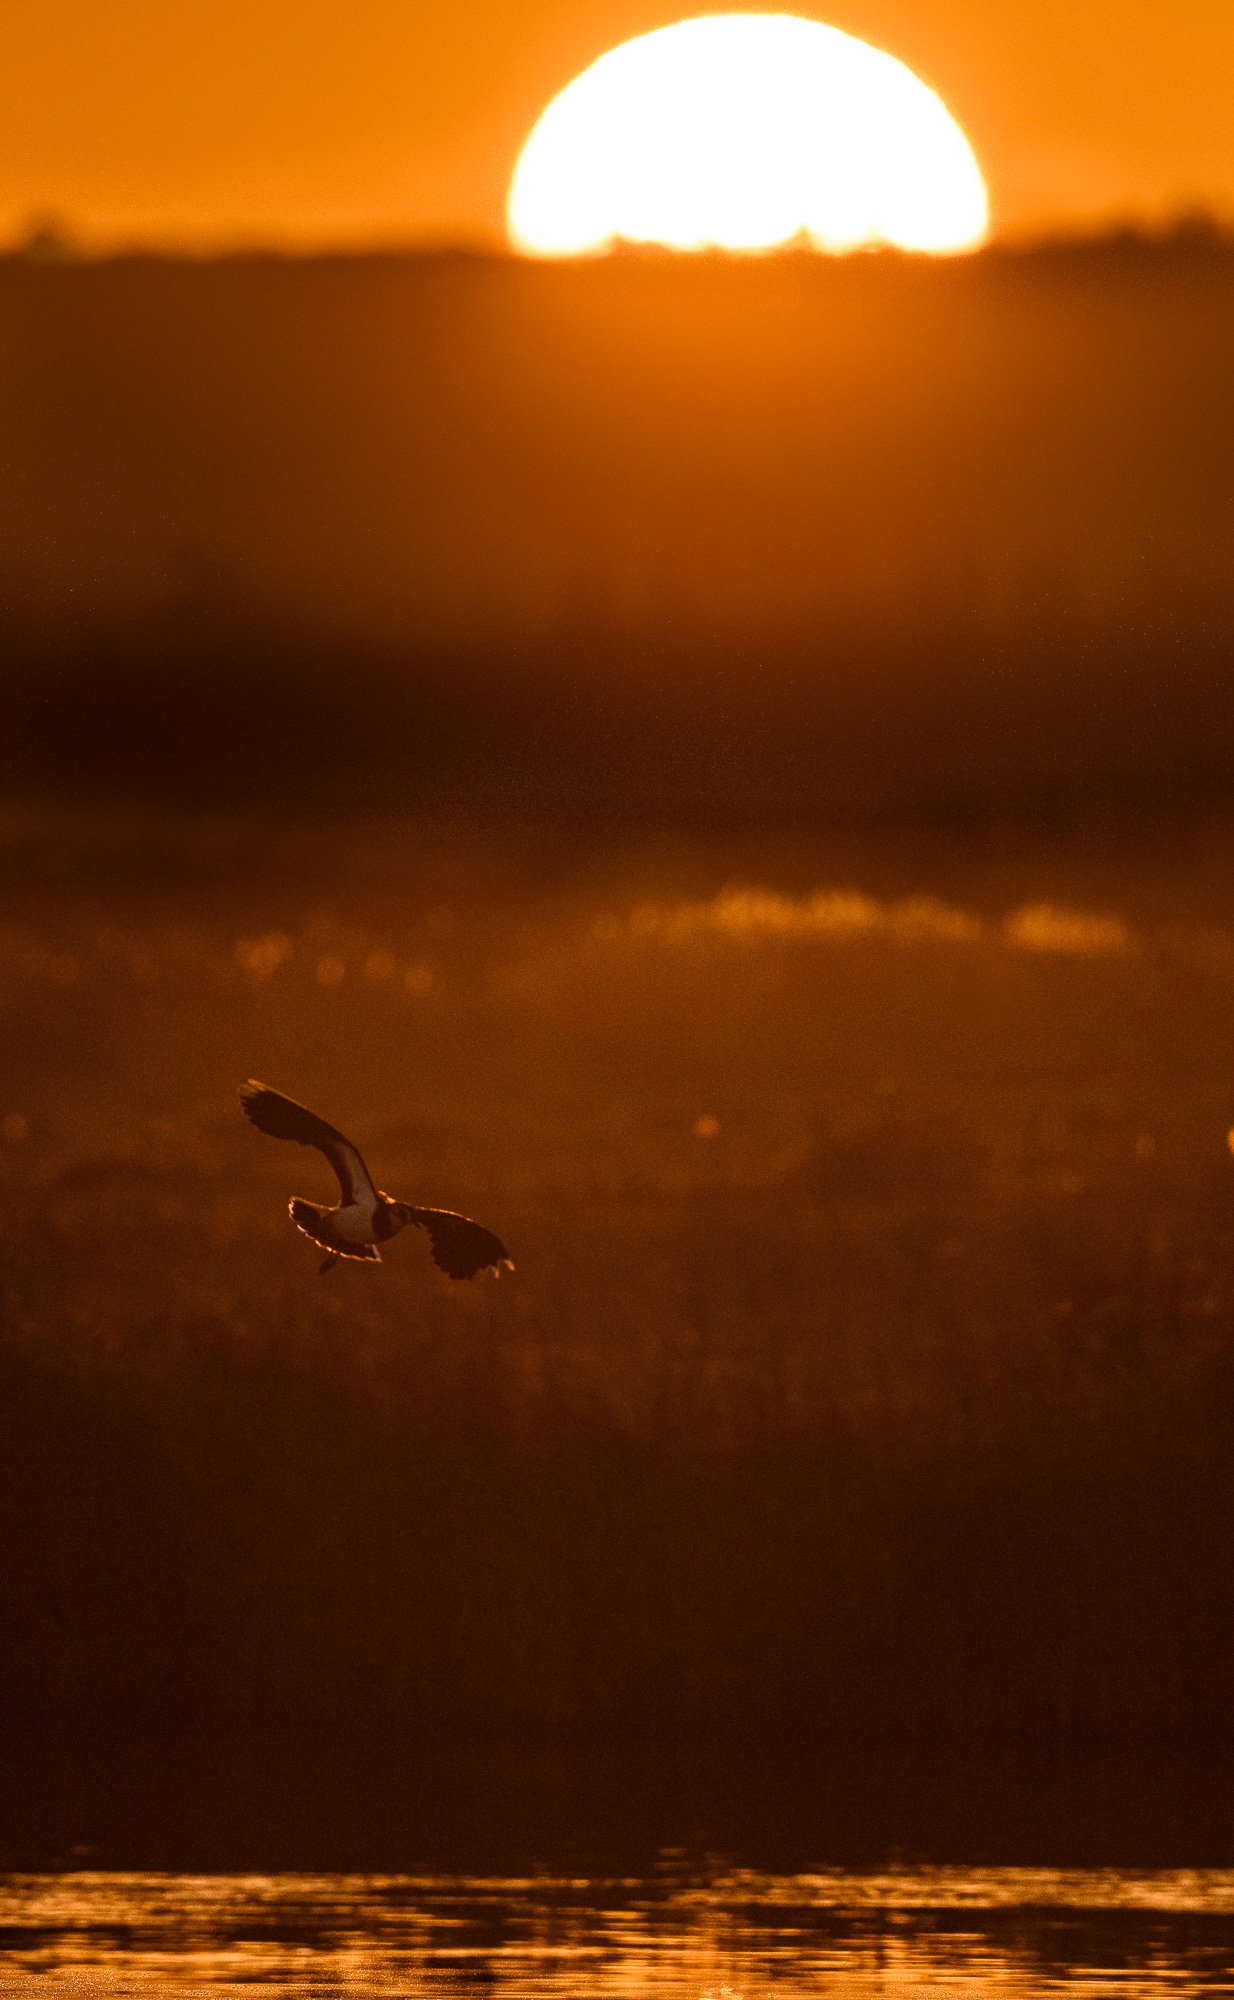 Lapwing (Vanellus vanellus) flies at sunrise